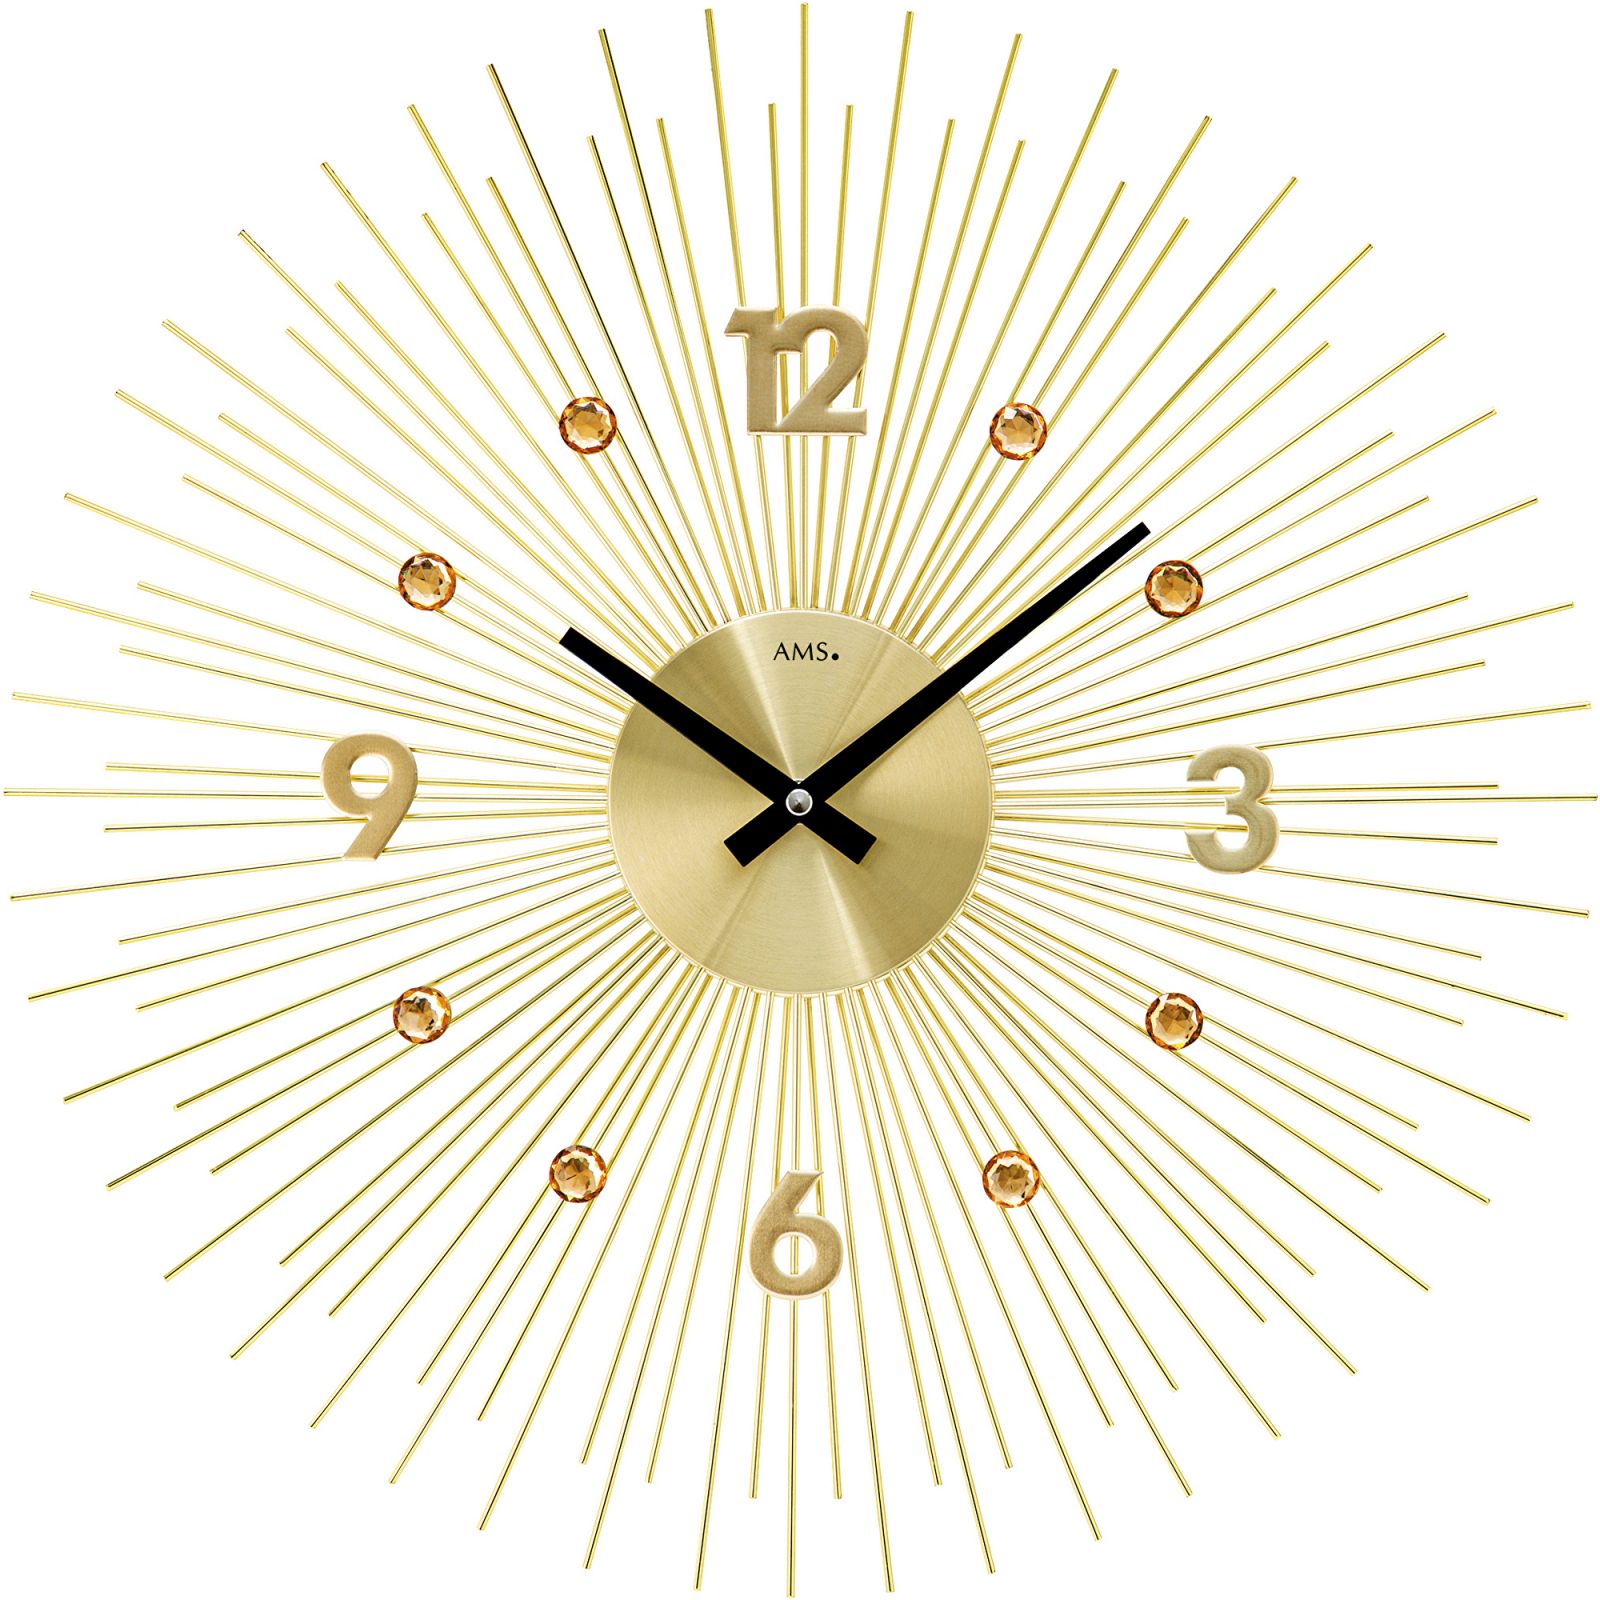 Designové hodiny velké ams 9611 motiv sluníčko zlatá